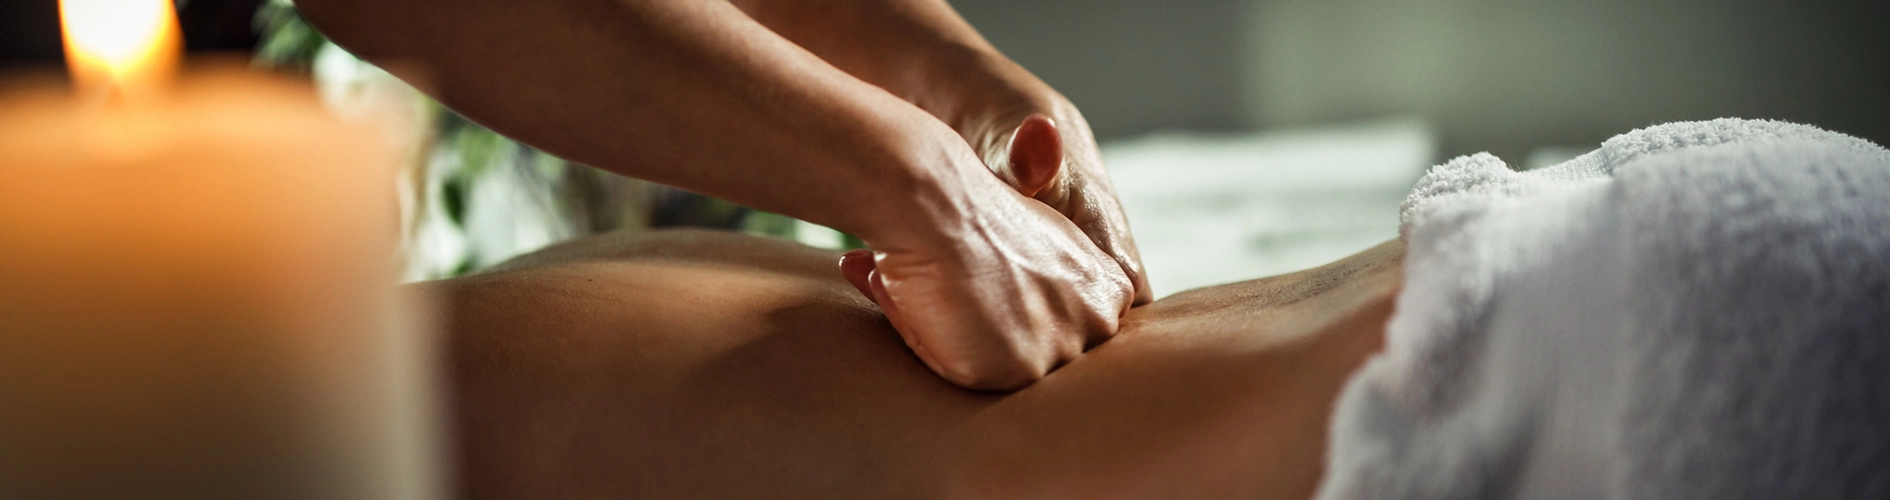 masaż terapeutyczny pleców